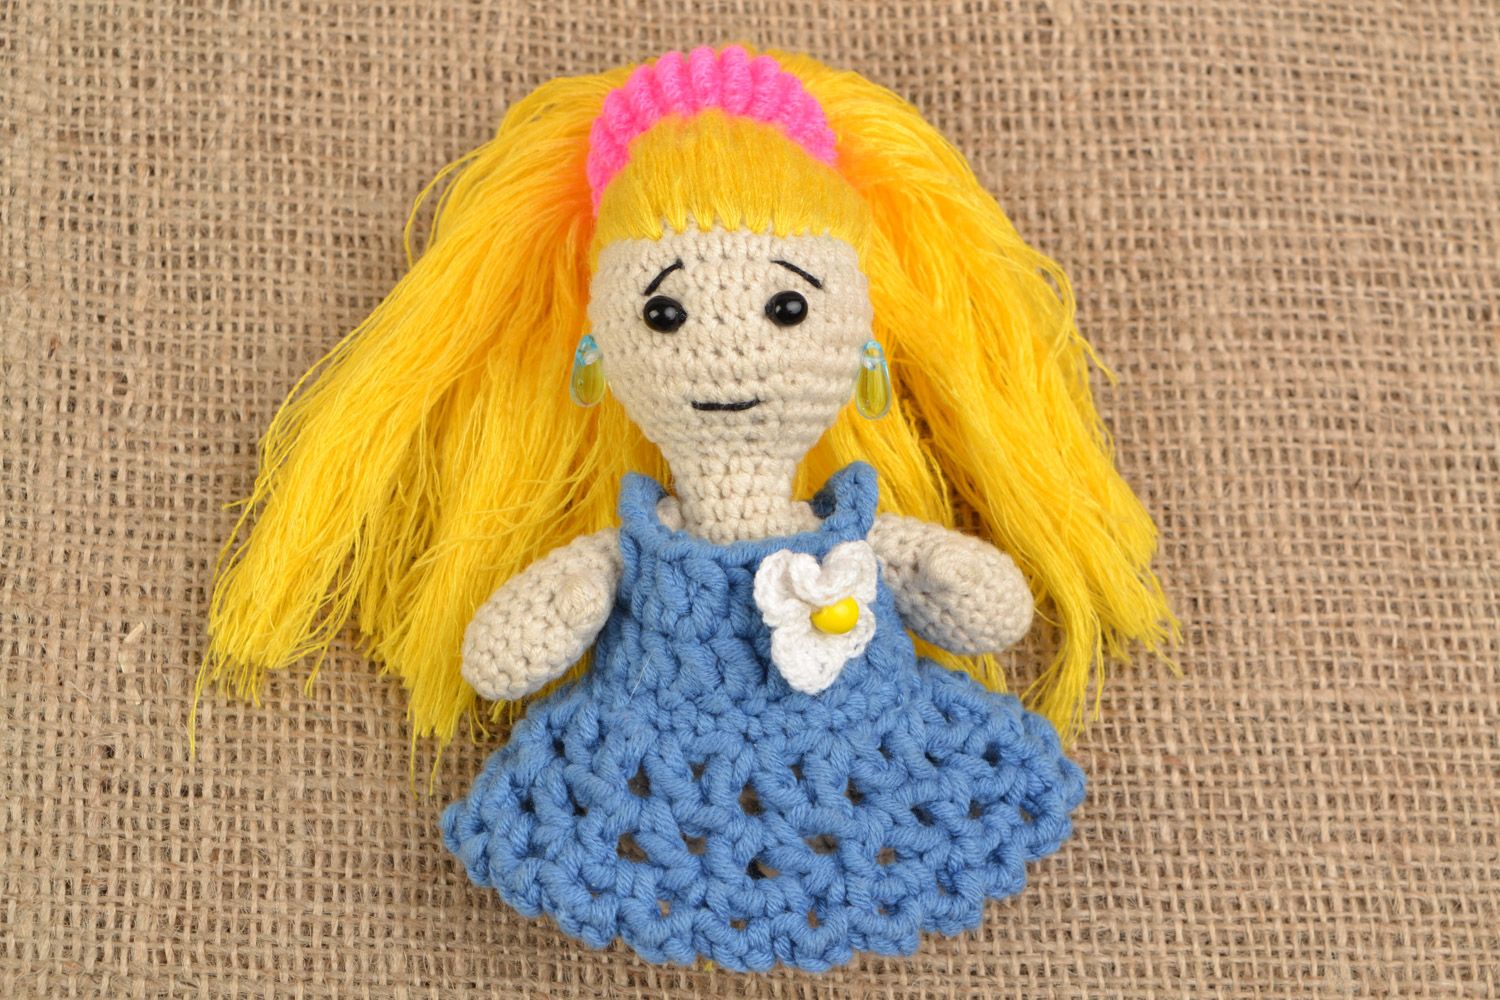 Мягкая вязаная игрушка ручной работы девочка с длинными волосами для детей фото 1